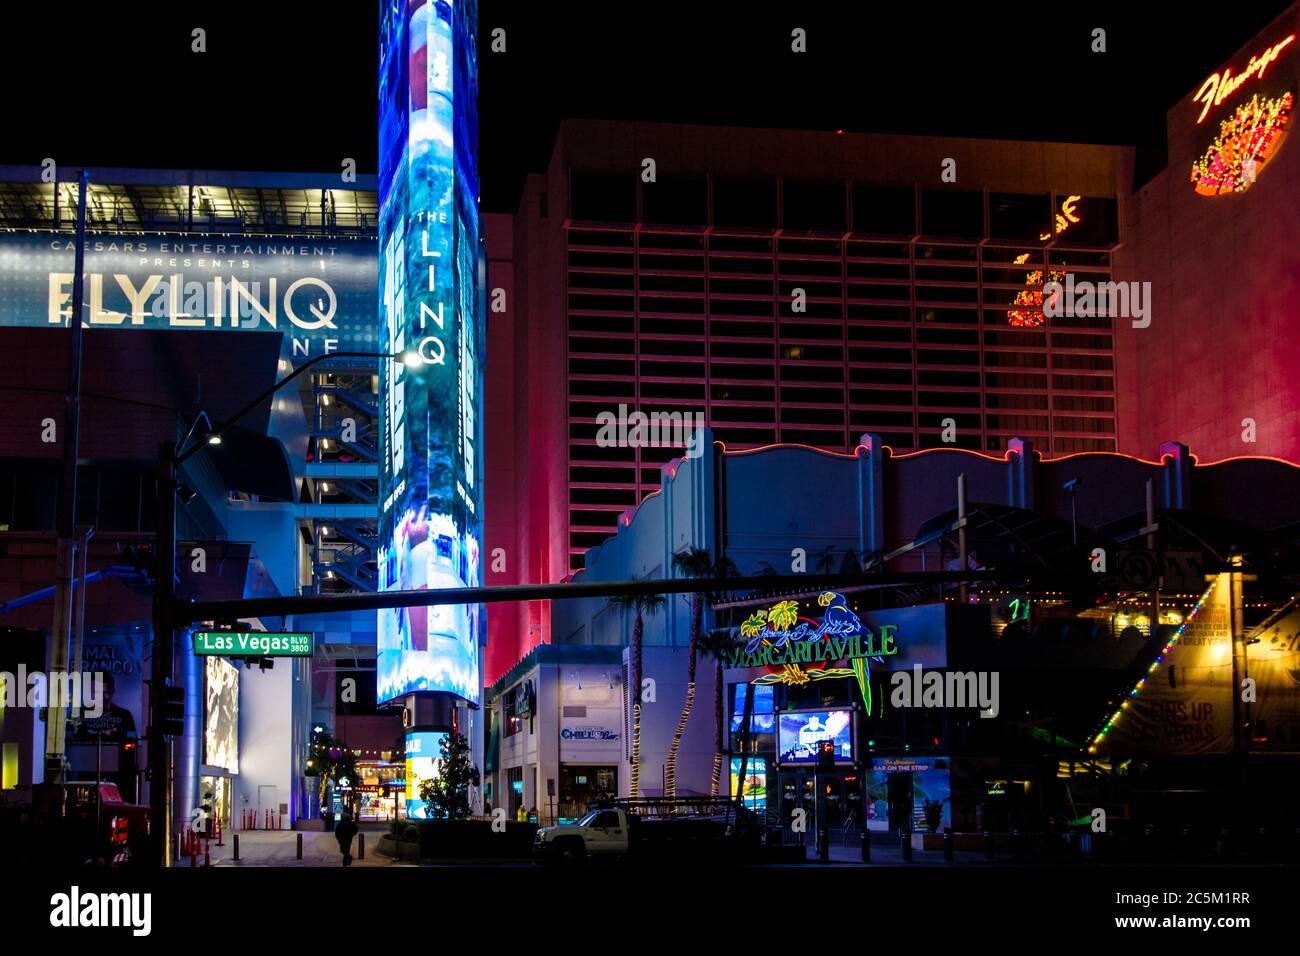 Las Vegas, Nevada, EE.UU. - 20 de febrero de 2020: Luces de neón iluminadas del Strip de las Vegas con señal para el famoso bulevar las Vegas. Foto de stock